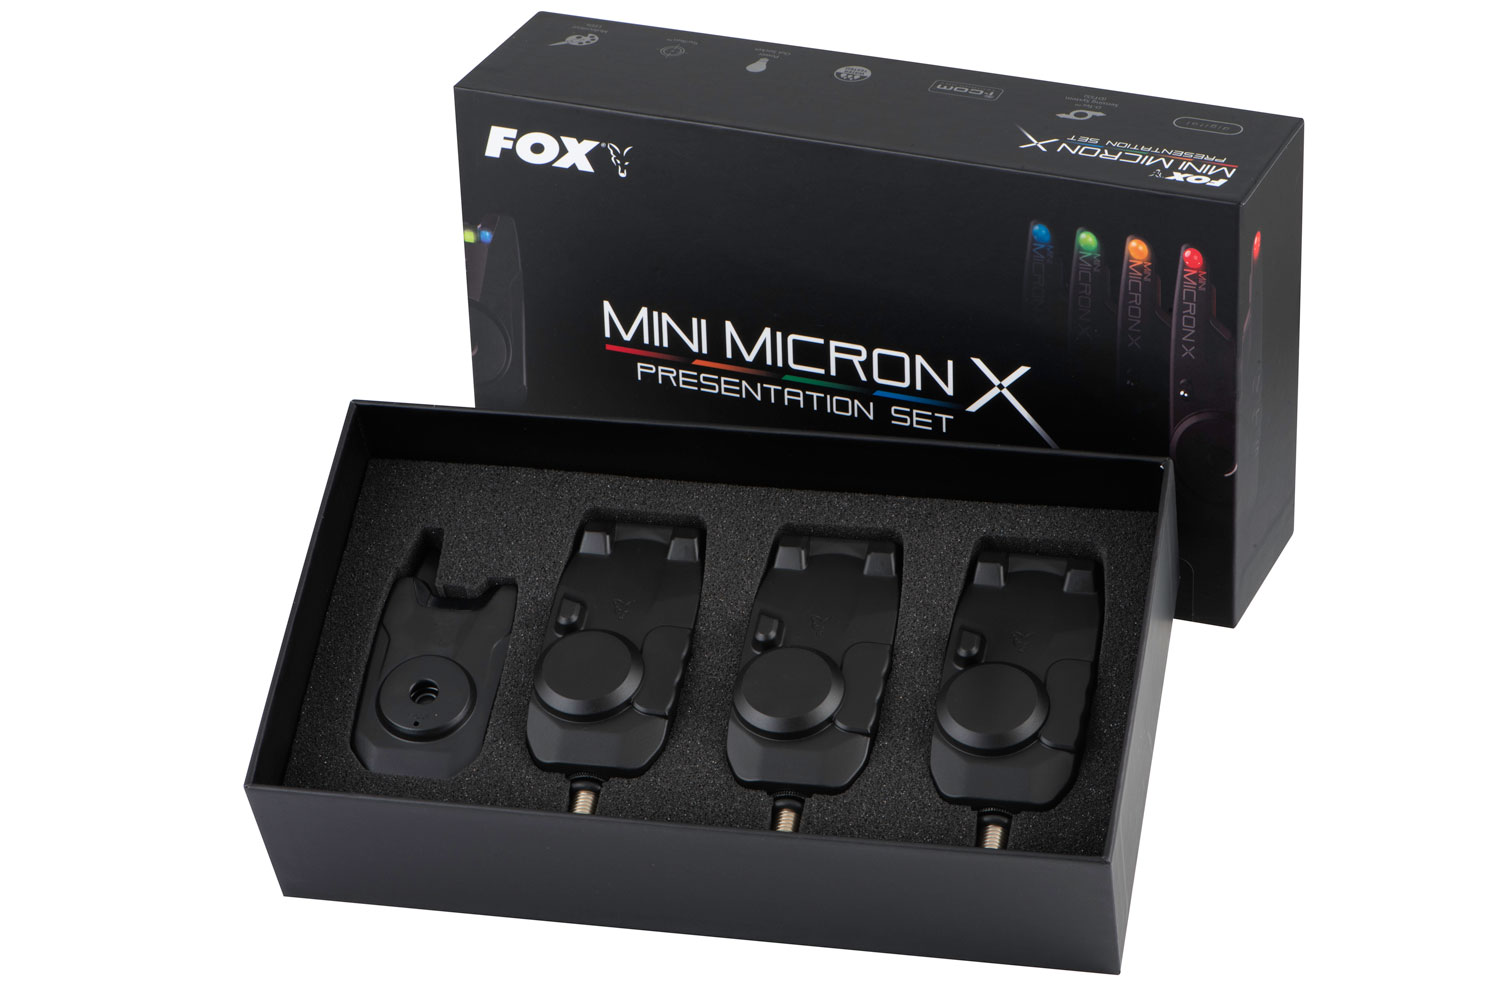  Mini Micron X